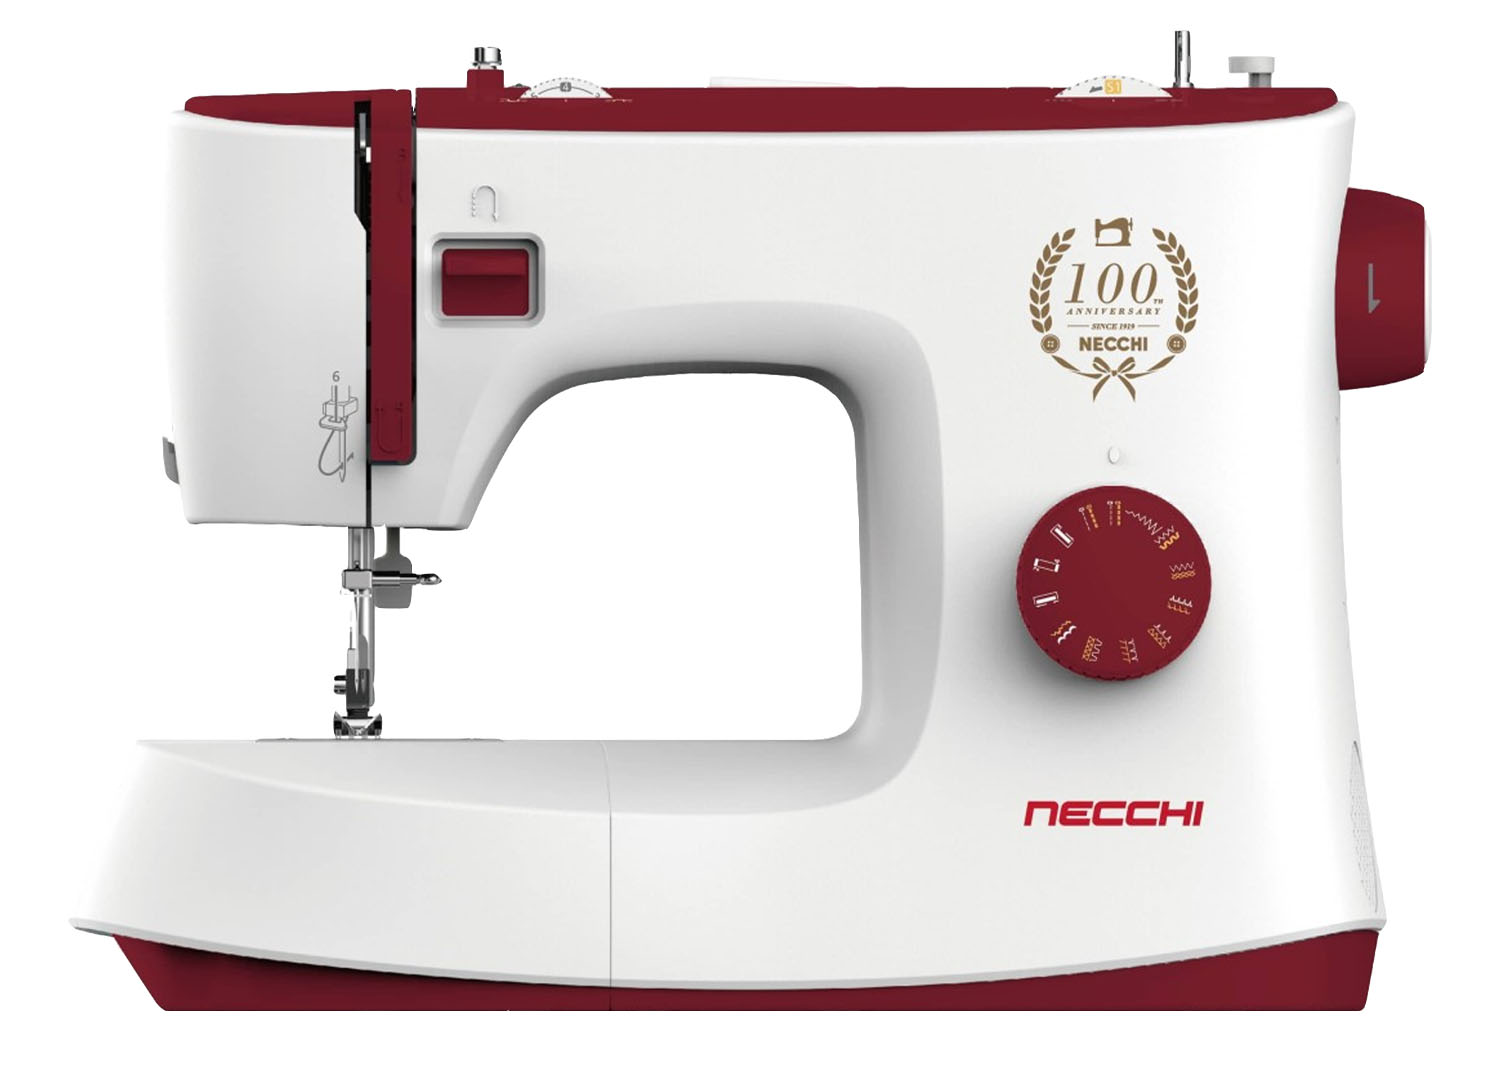 Macchine per cucire - Necchi K417A - Necchi Shop Online